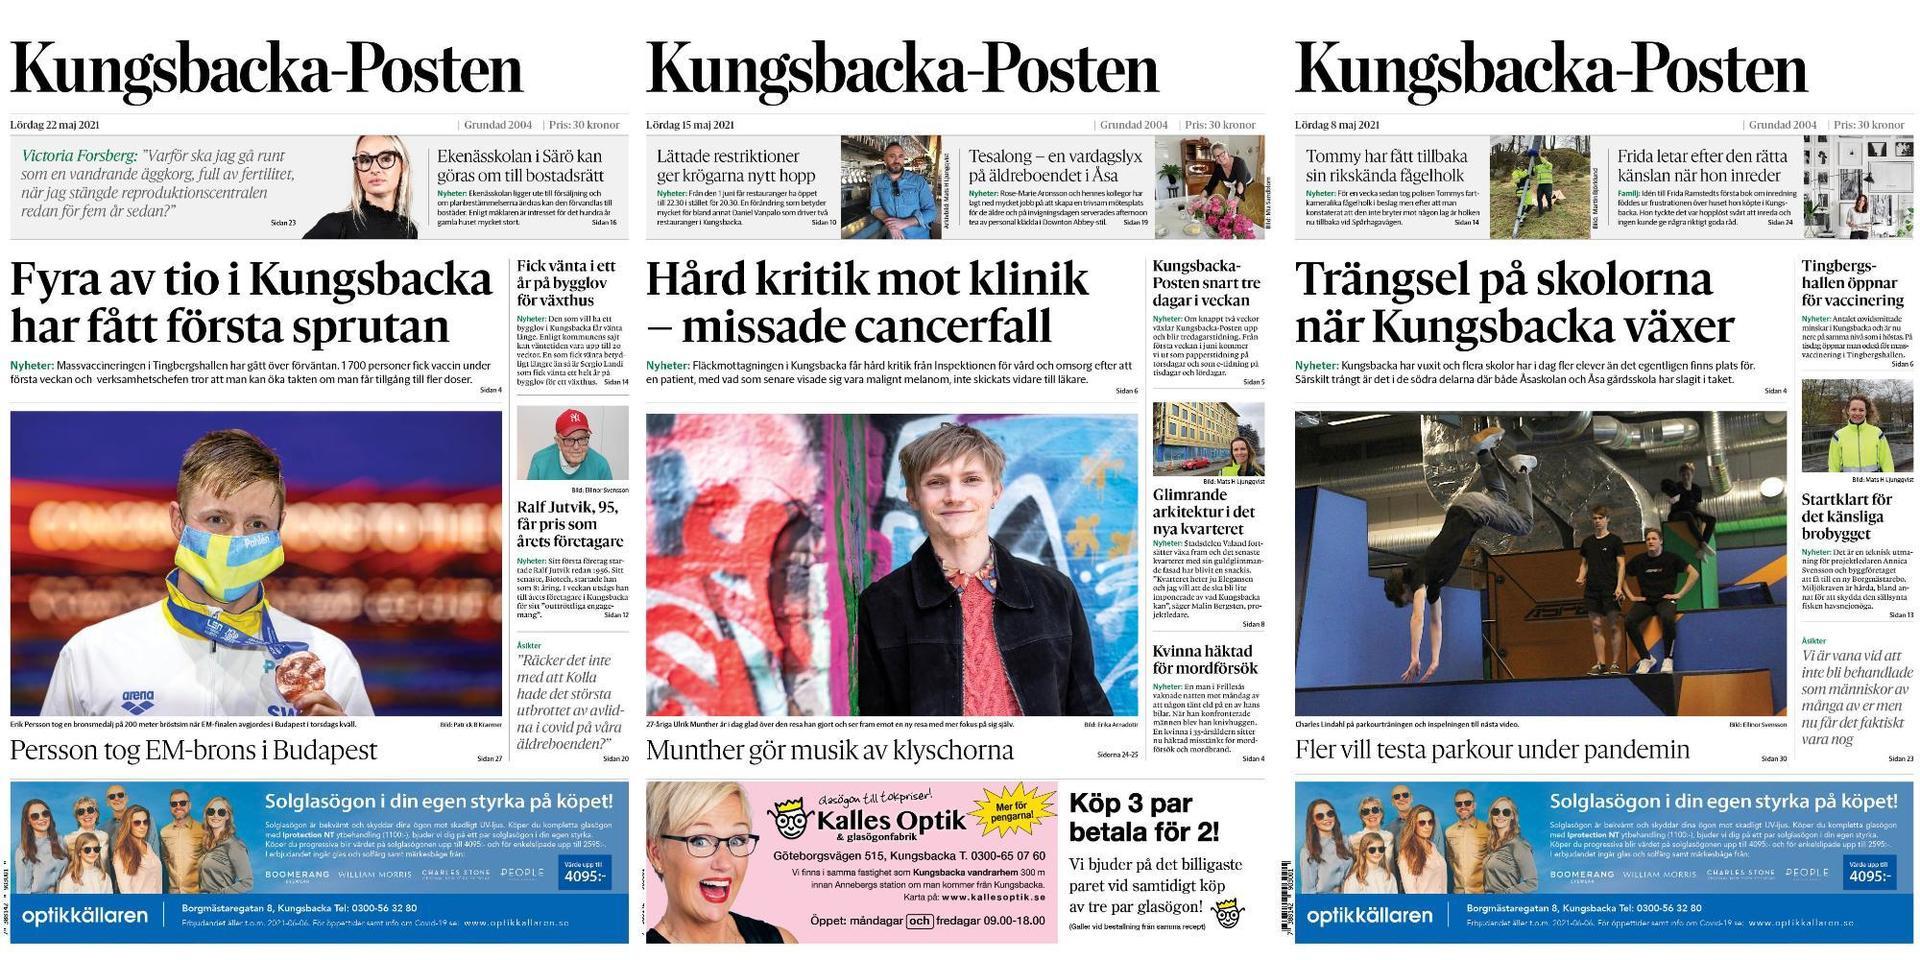 Kungsbacka-Posten växlar nu upp och blir en tredagarstidning.